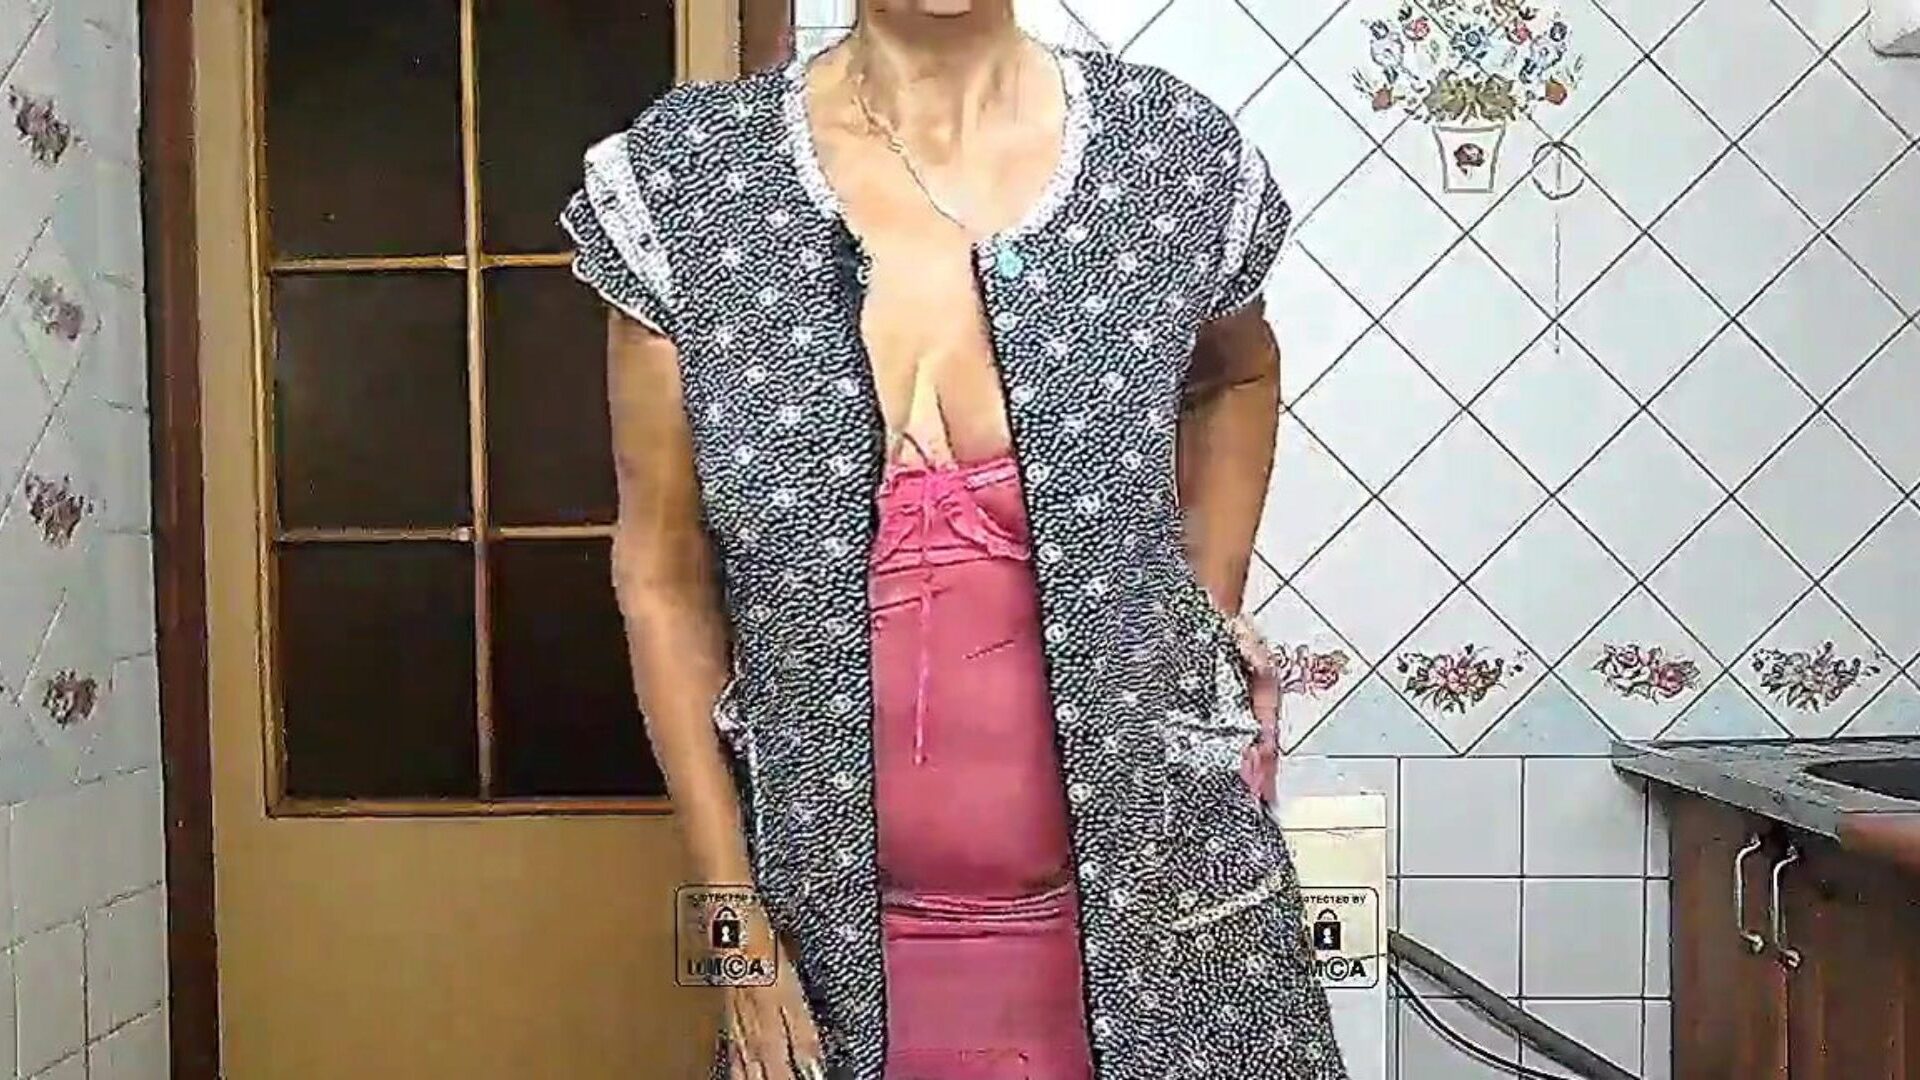 Η μεγάλη λεία φούσκα της Lukerya σε ροζ μόνη σέξι νοικοκυρά στον ελεύθερο χρόνο της συνομιλώντας στην κουζίνα με ροδοπέταλα εσώρουχα afro κάλτσες και μικροκασέτες κιλότες εμφανίζει twerk με ένα κουνώντας μεγάλο κιόσκι